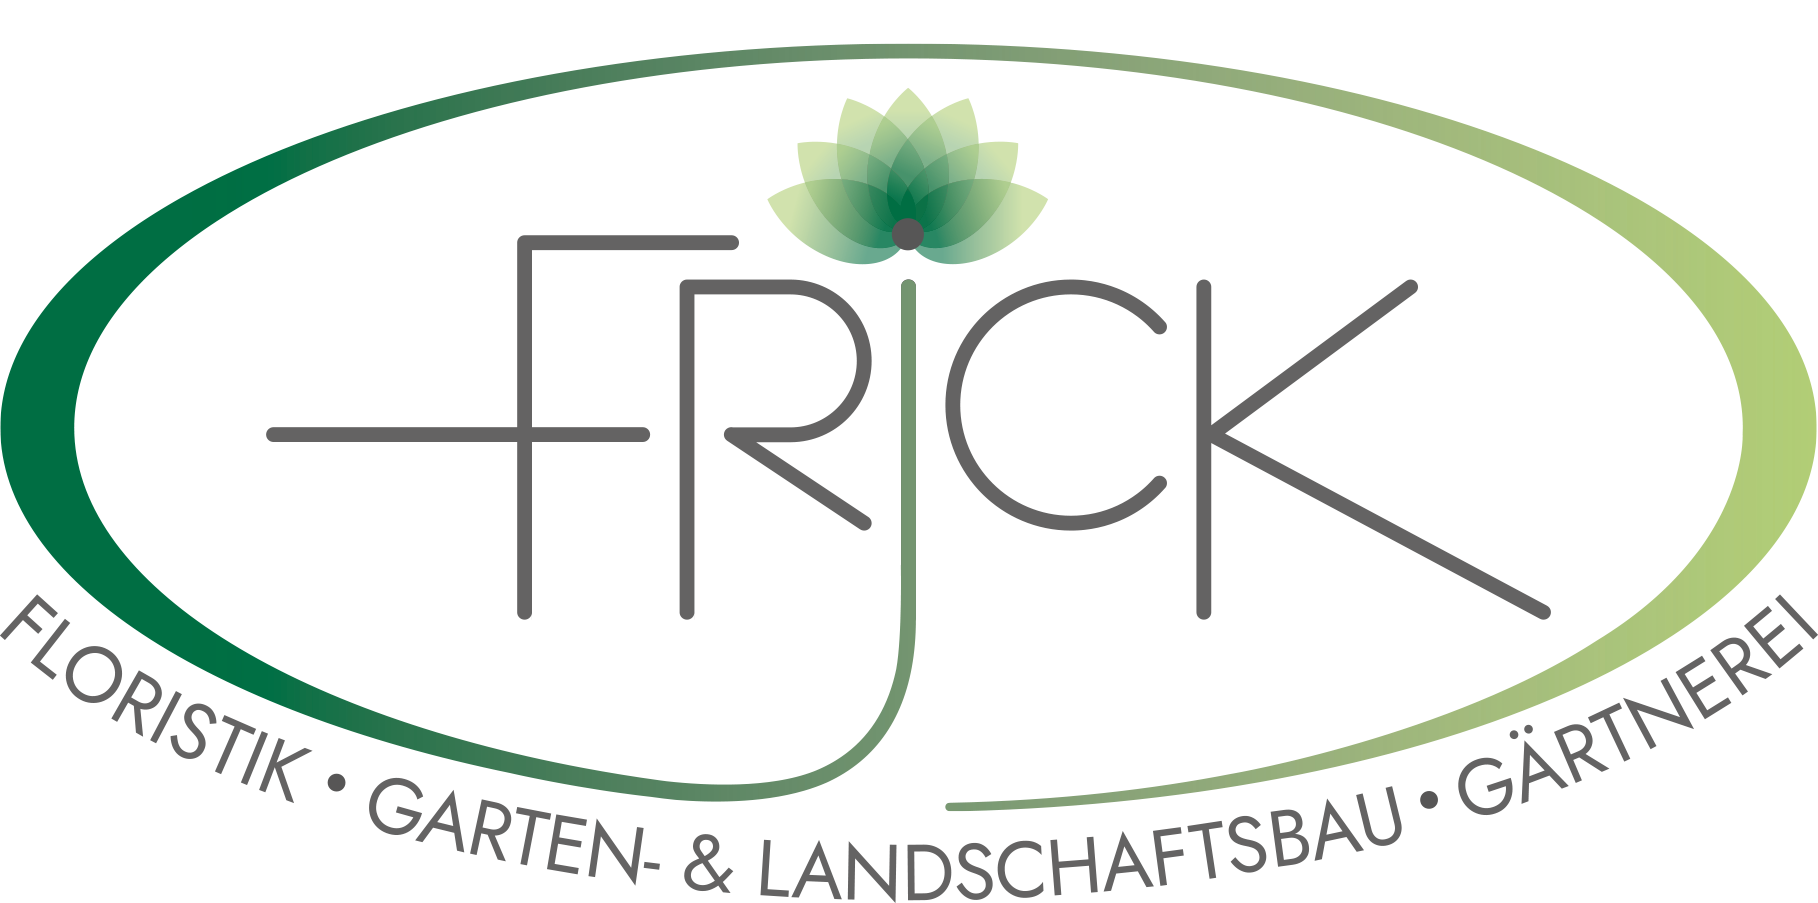 Floristik Frick Logo groß